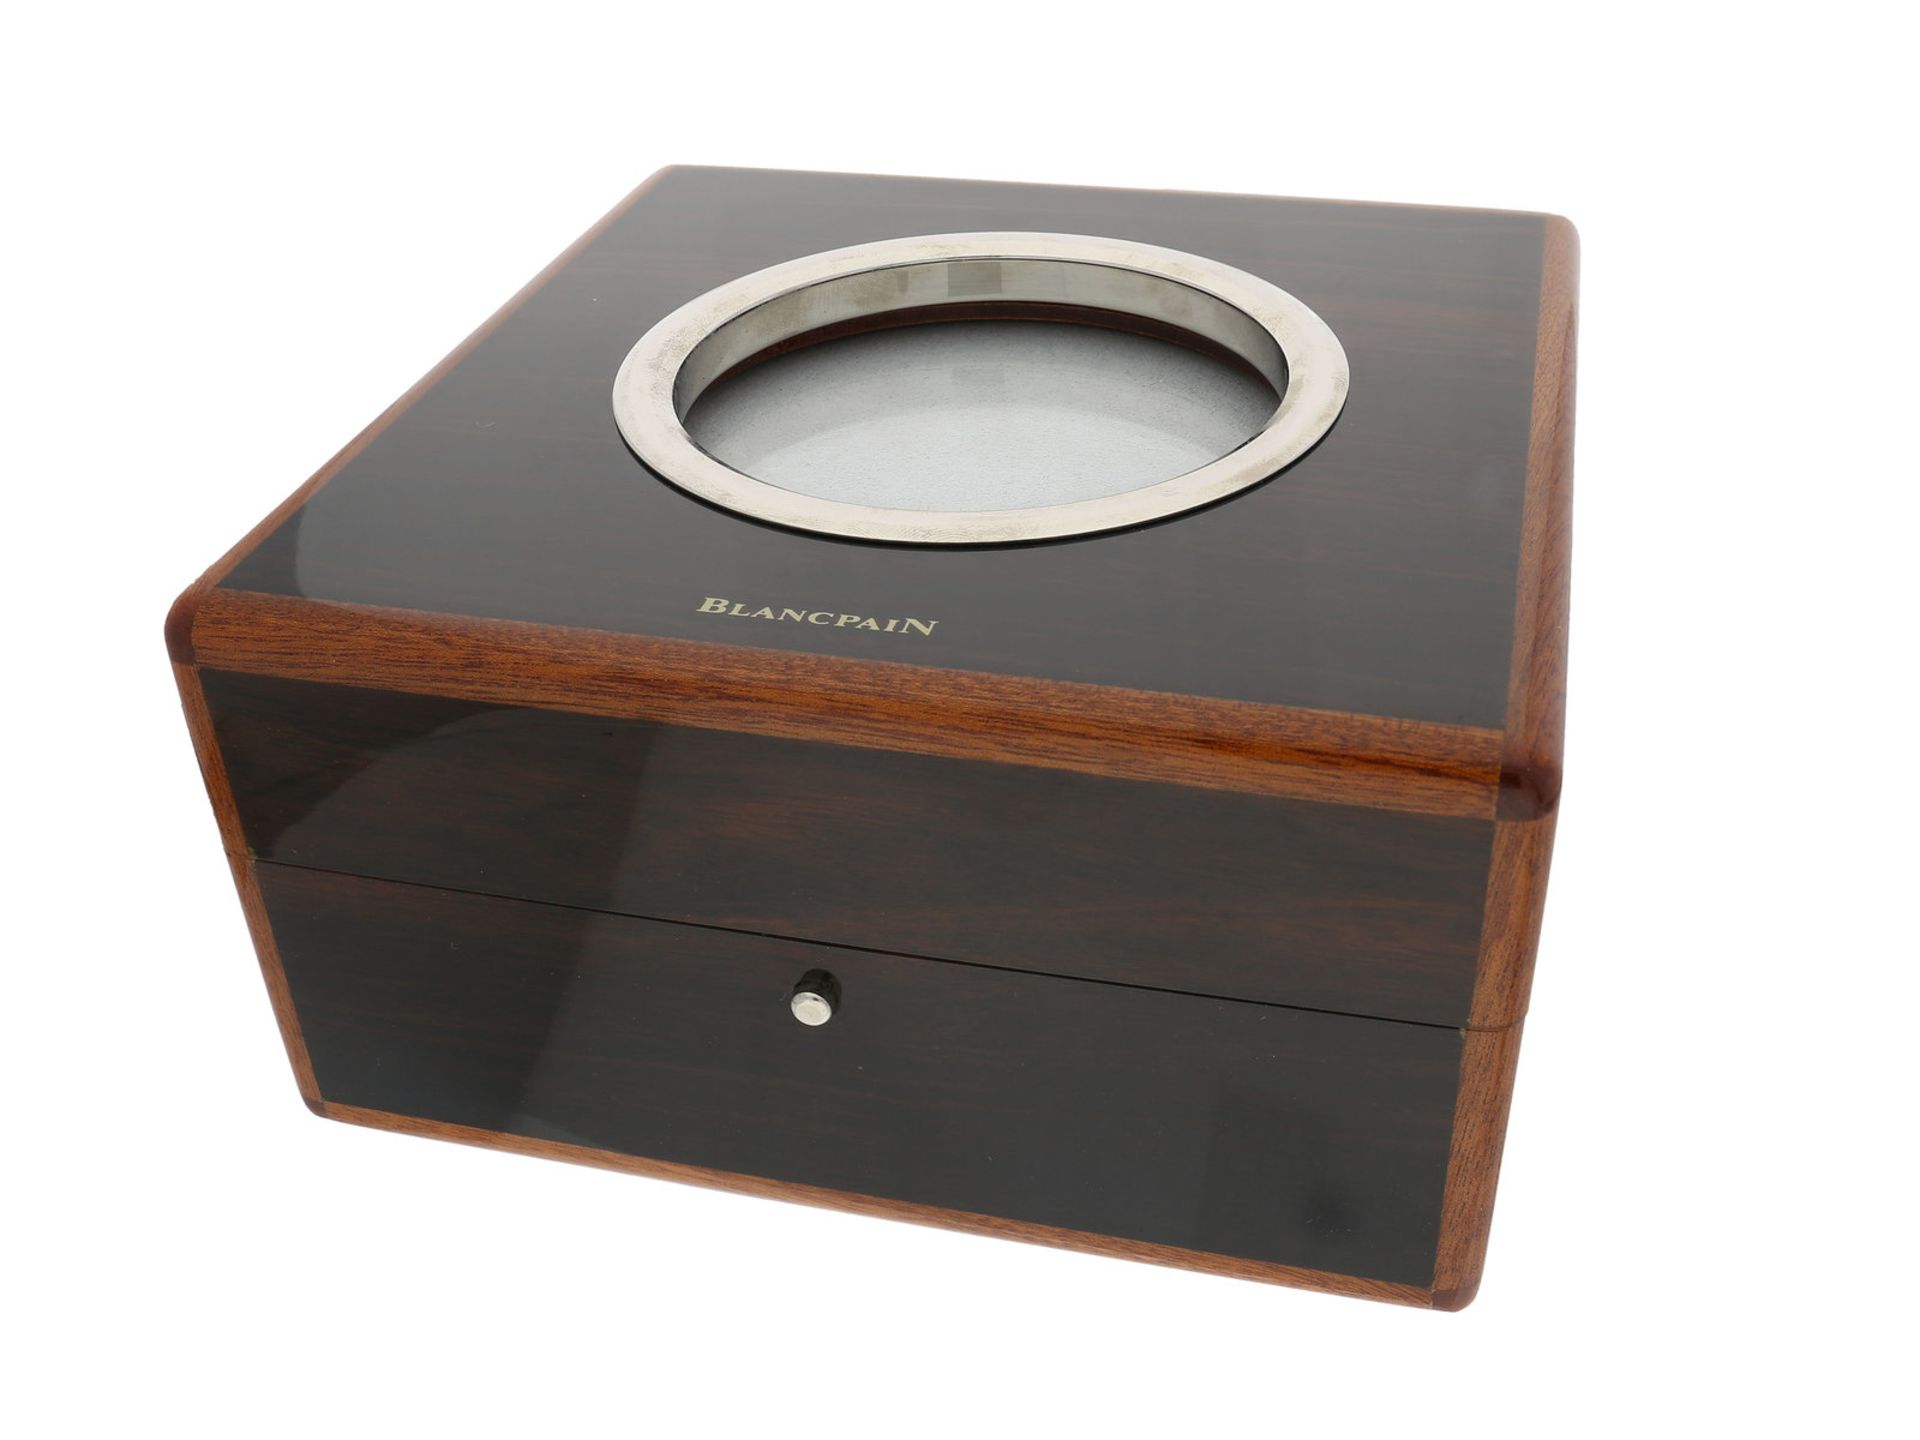 Uhrenbox: hochwertige, neuwertige Edelholz Armbanduhren-Box, original Blancpain Limited Edition,